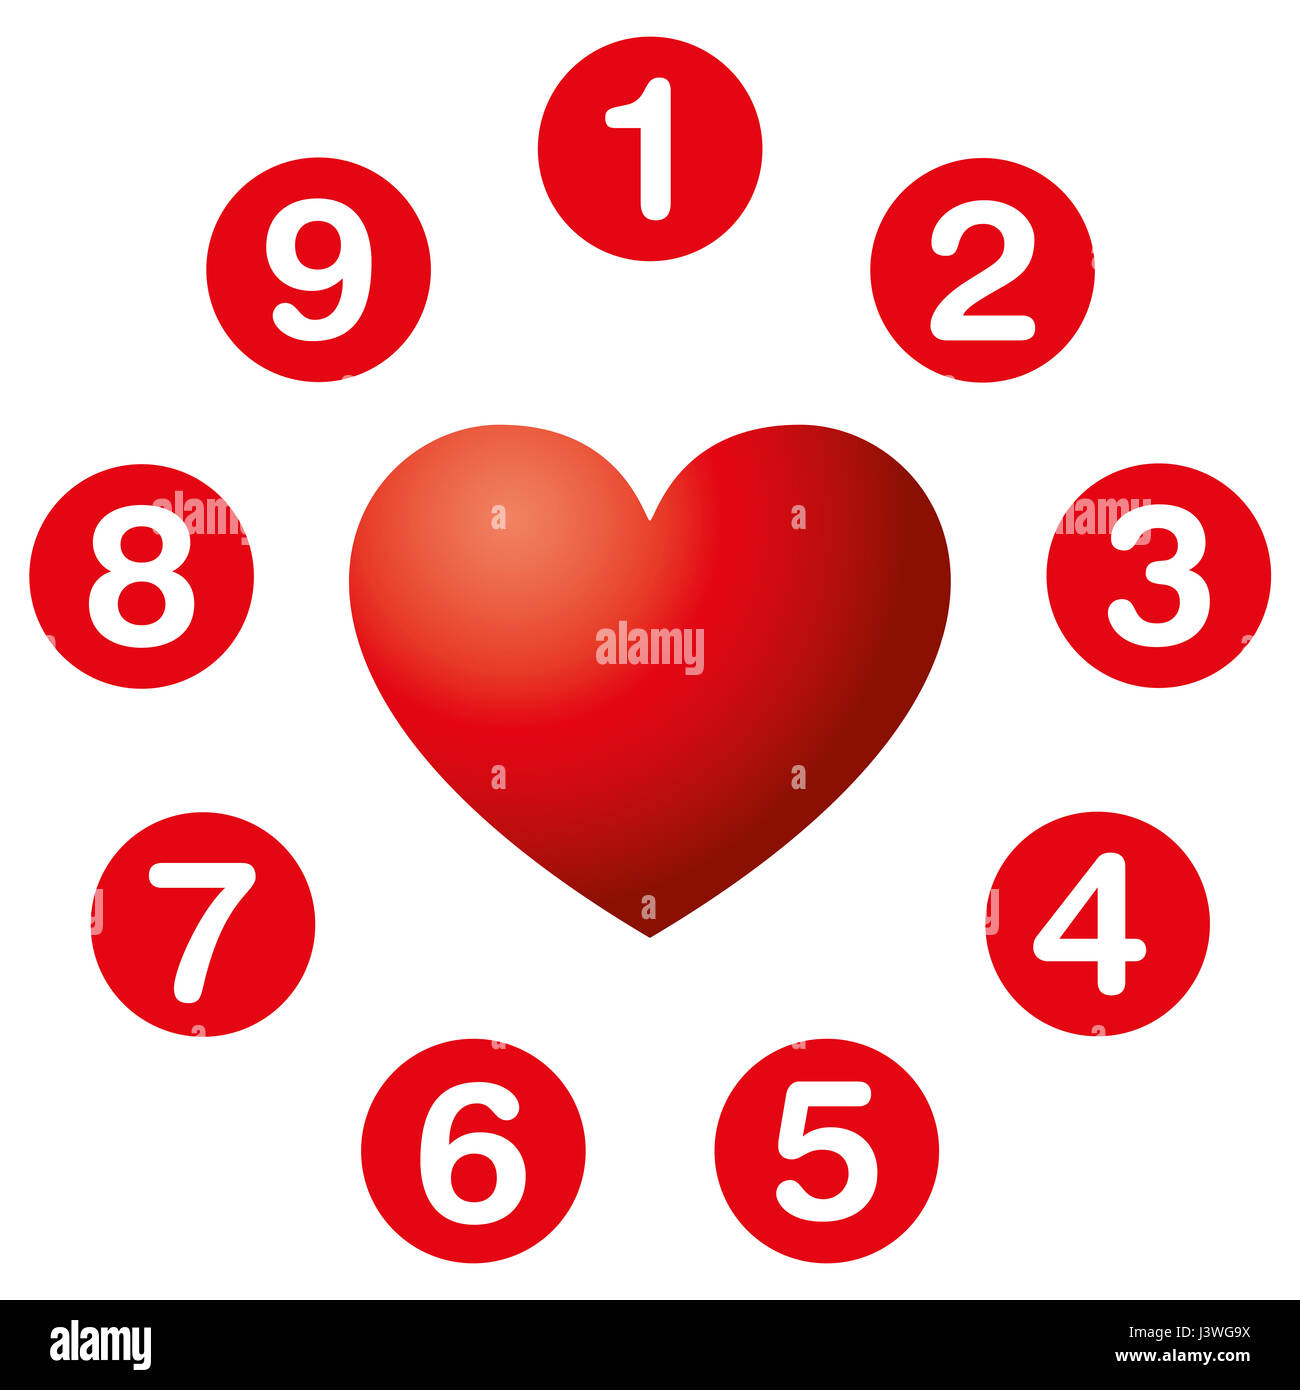 Deseos del corazón números circle. La Numerología. Alma instar a números en círculos rojos alrededor de un símbolo de corazón. Los números revelan lo que queremos más, lo que nosotros drive Foto de stock